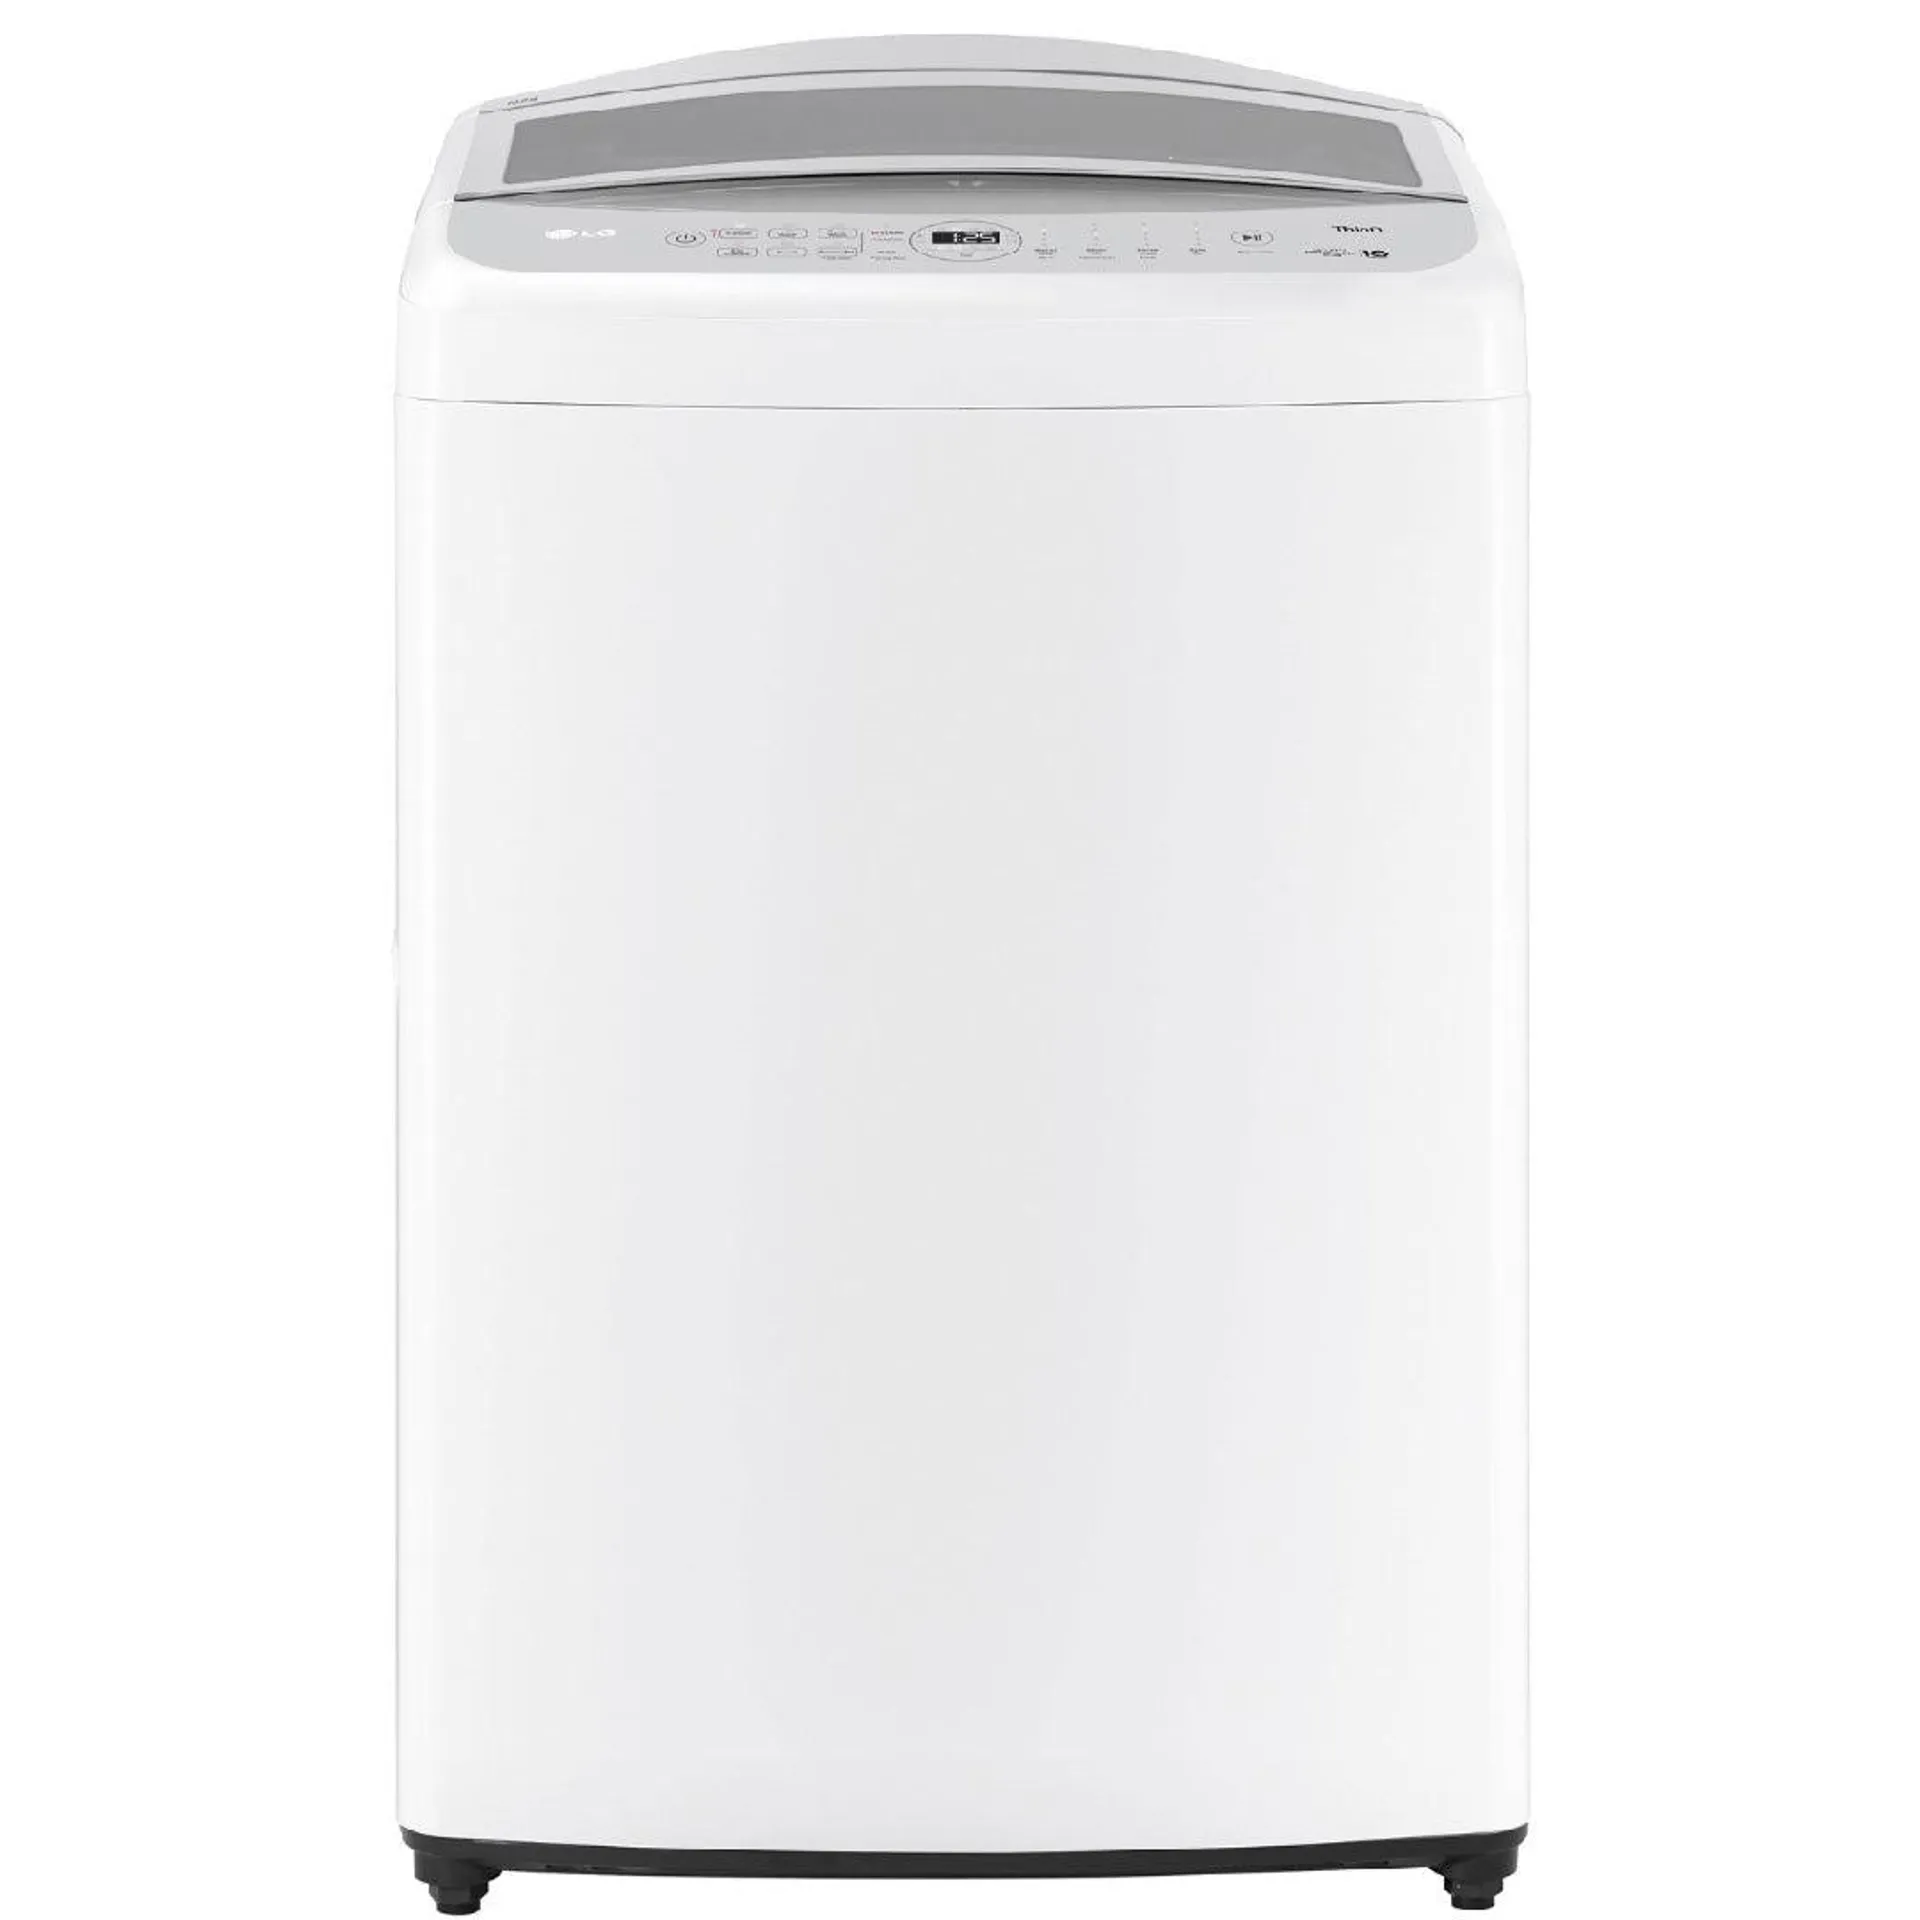 LG Series 5 10kg Top Load Washing Machine White